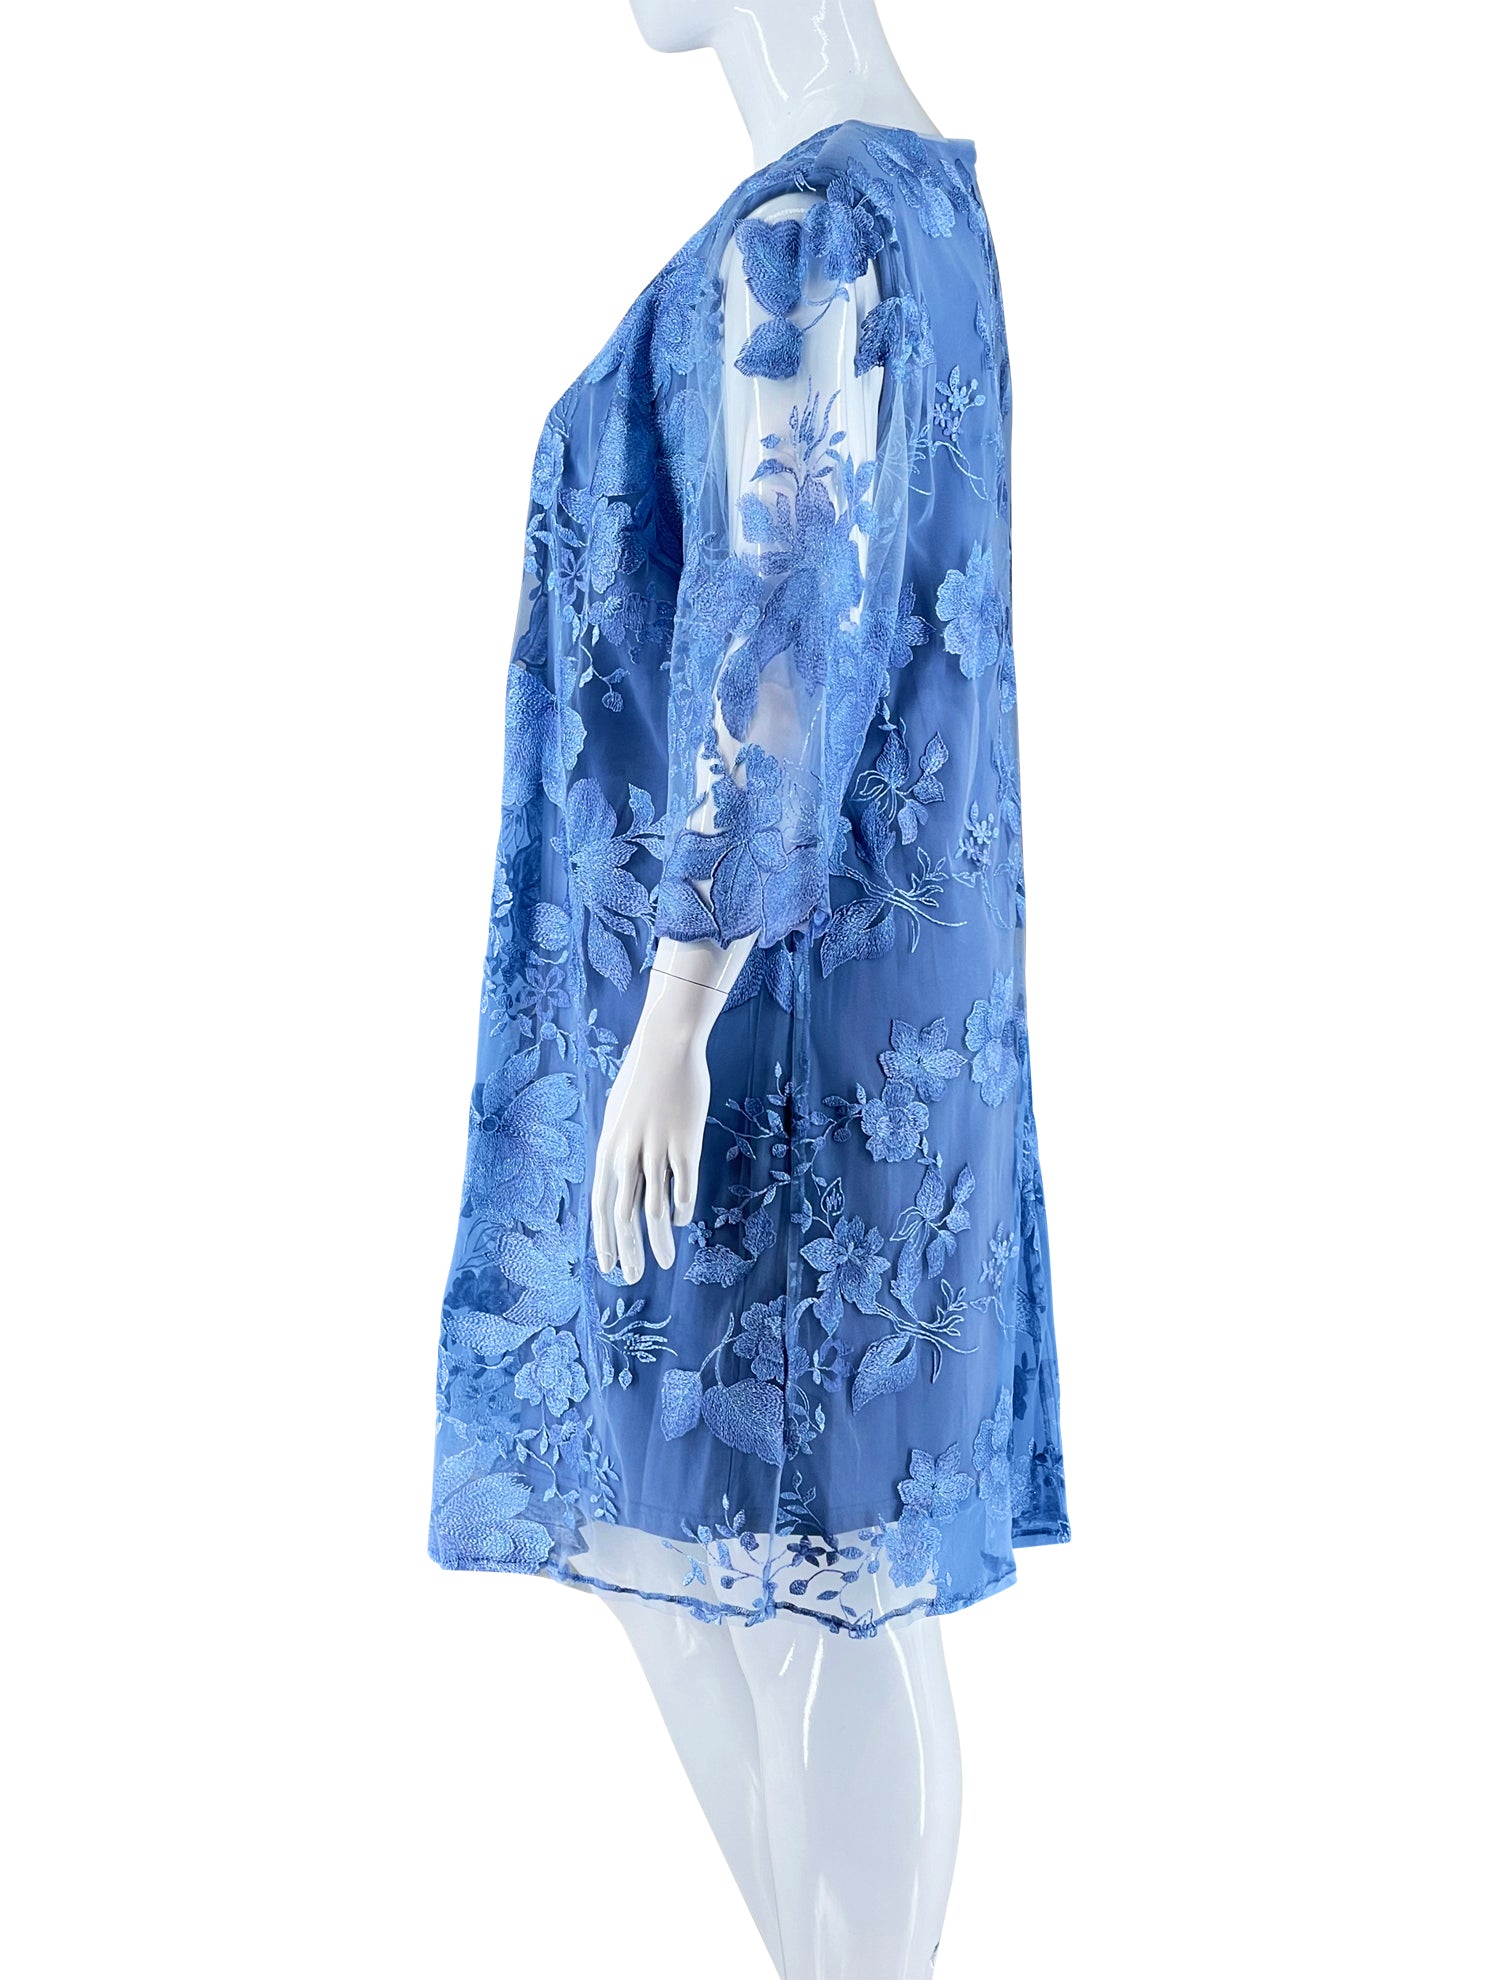 Alex Evening Pastel Blue Lace Dress